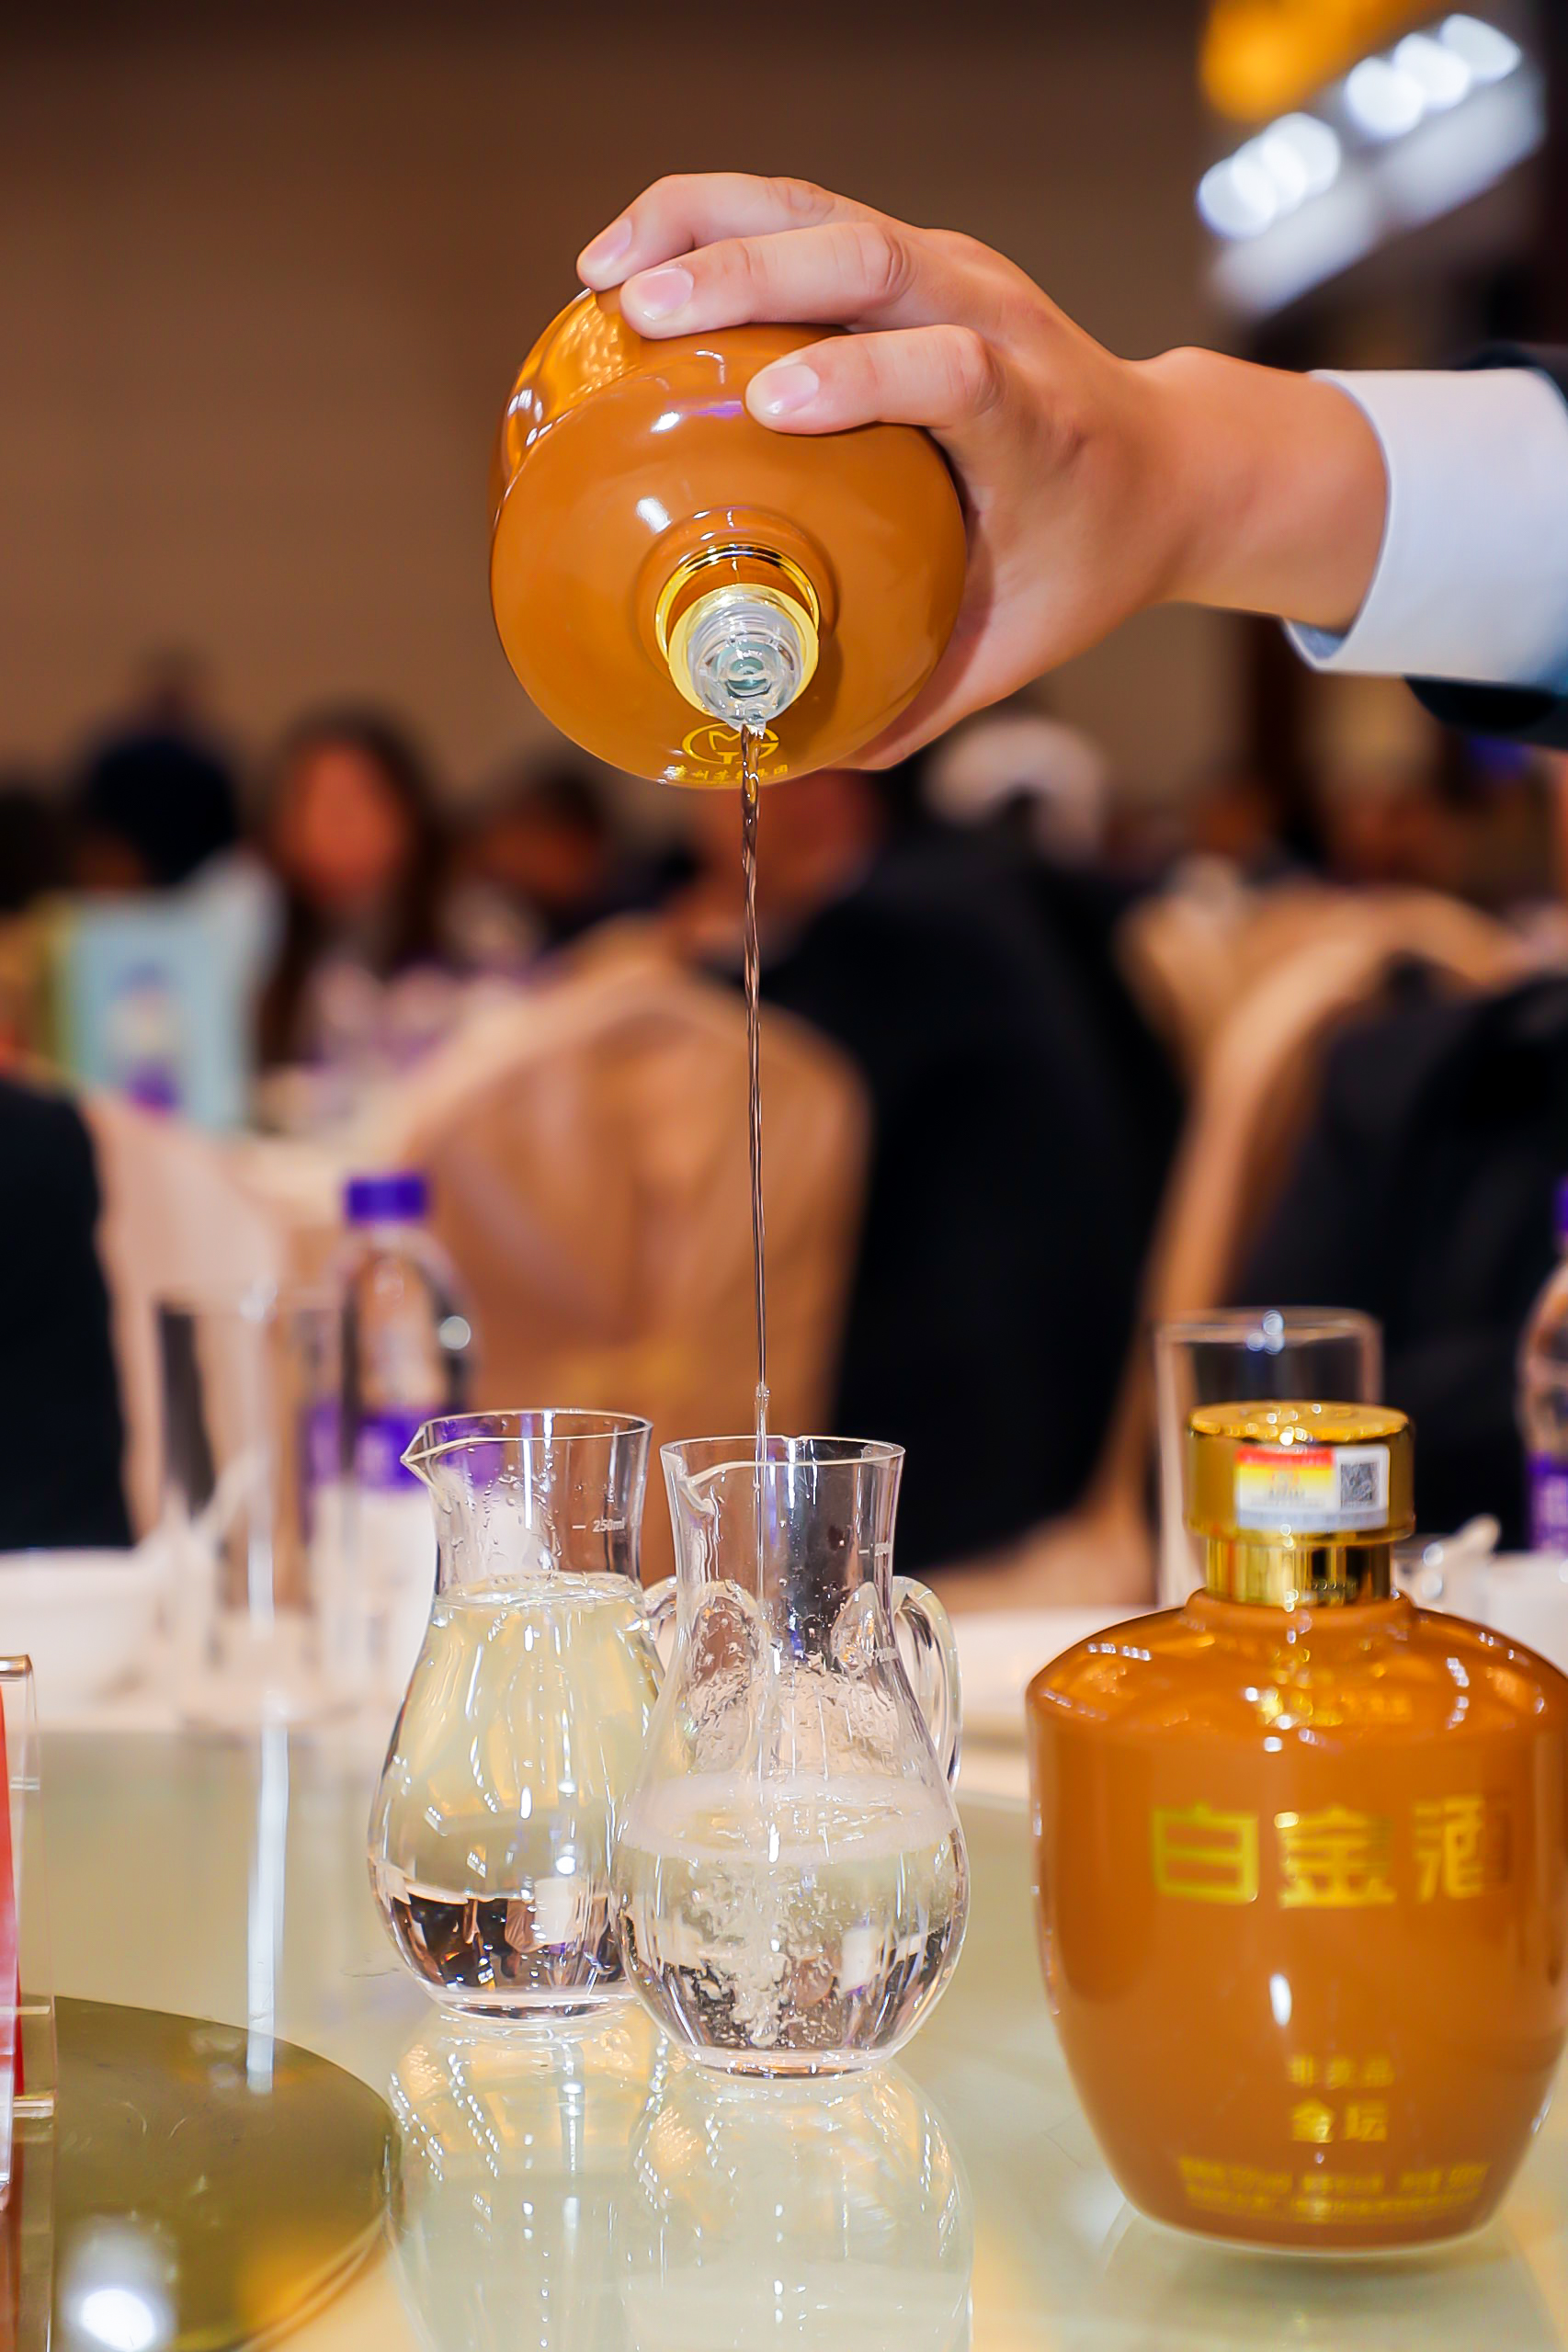 弘扬酱香文化 提升品酒技能 2019白金酒杯全国品酒大赛在京隆重举办